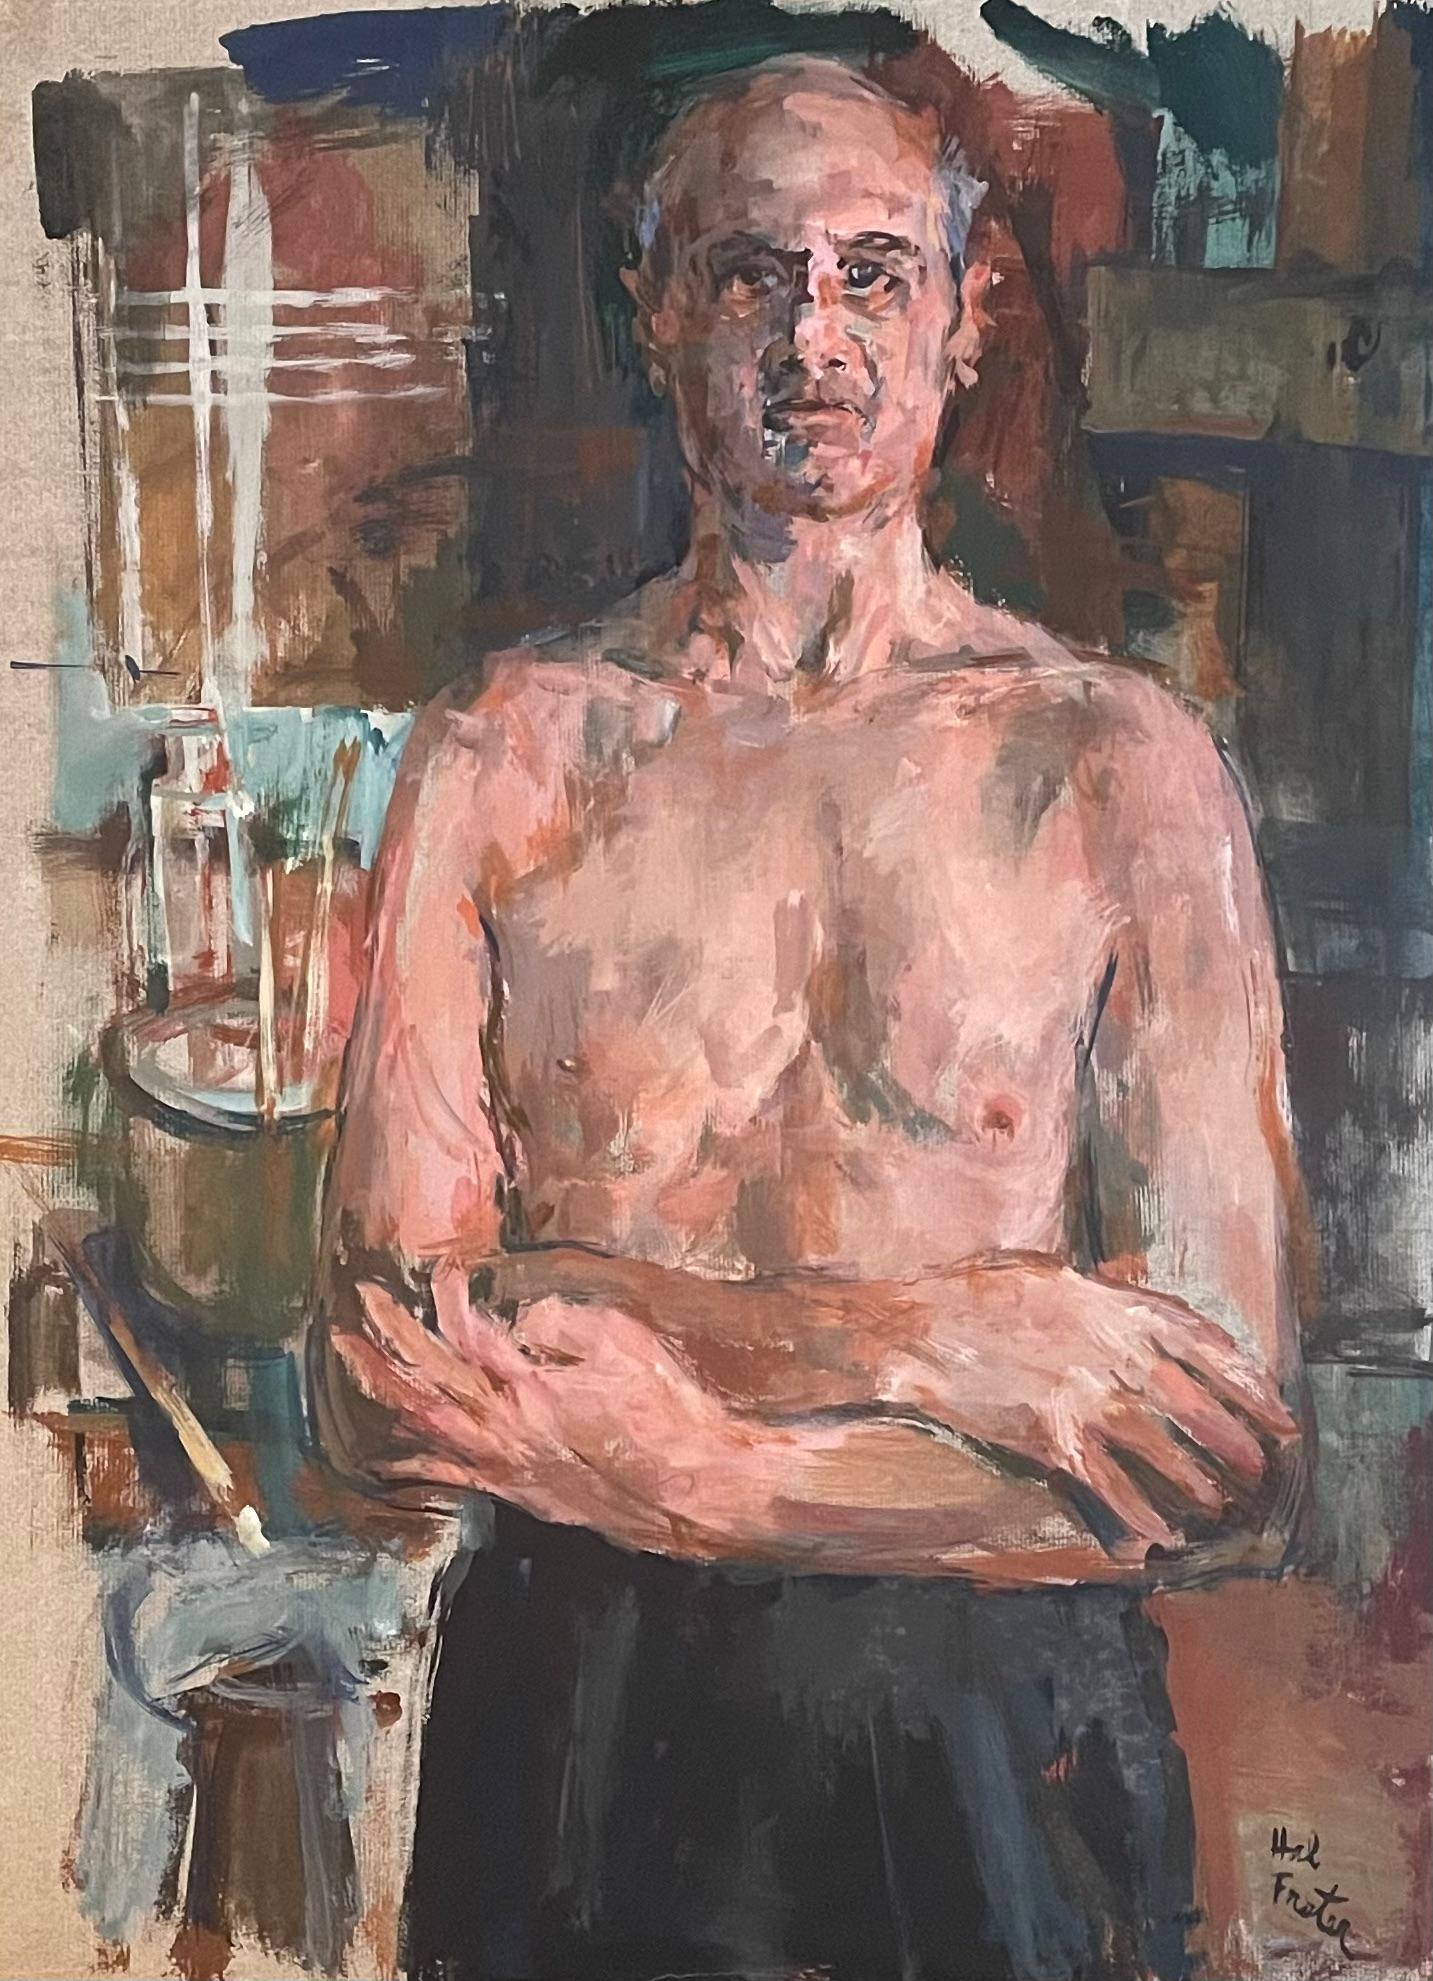 L'œuvre "L'artiste en tant que jeune homme" de Hal Frater est une huile sur toile saisissante qui capture l'essence de l'artiste lui-même, rendue dans un style brut et émotif. La palette est terreuse, avec des bruns et des crèmes naturels